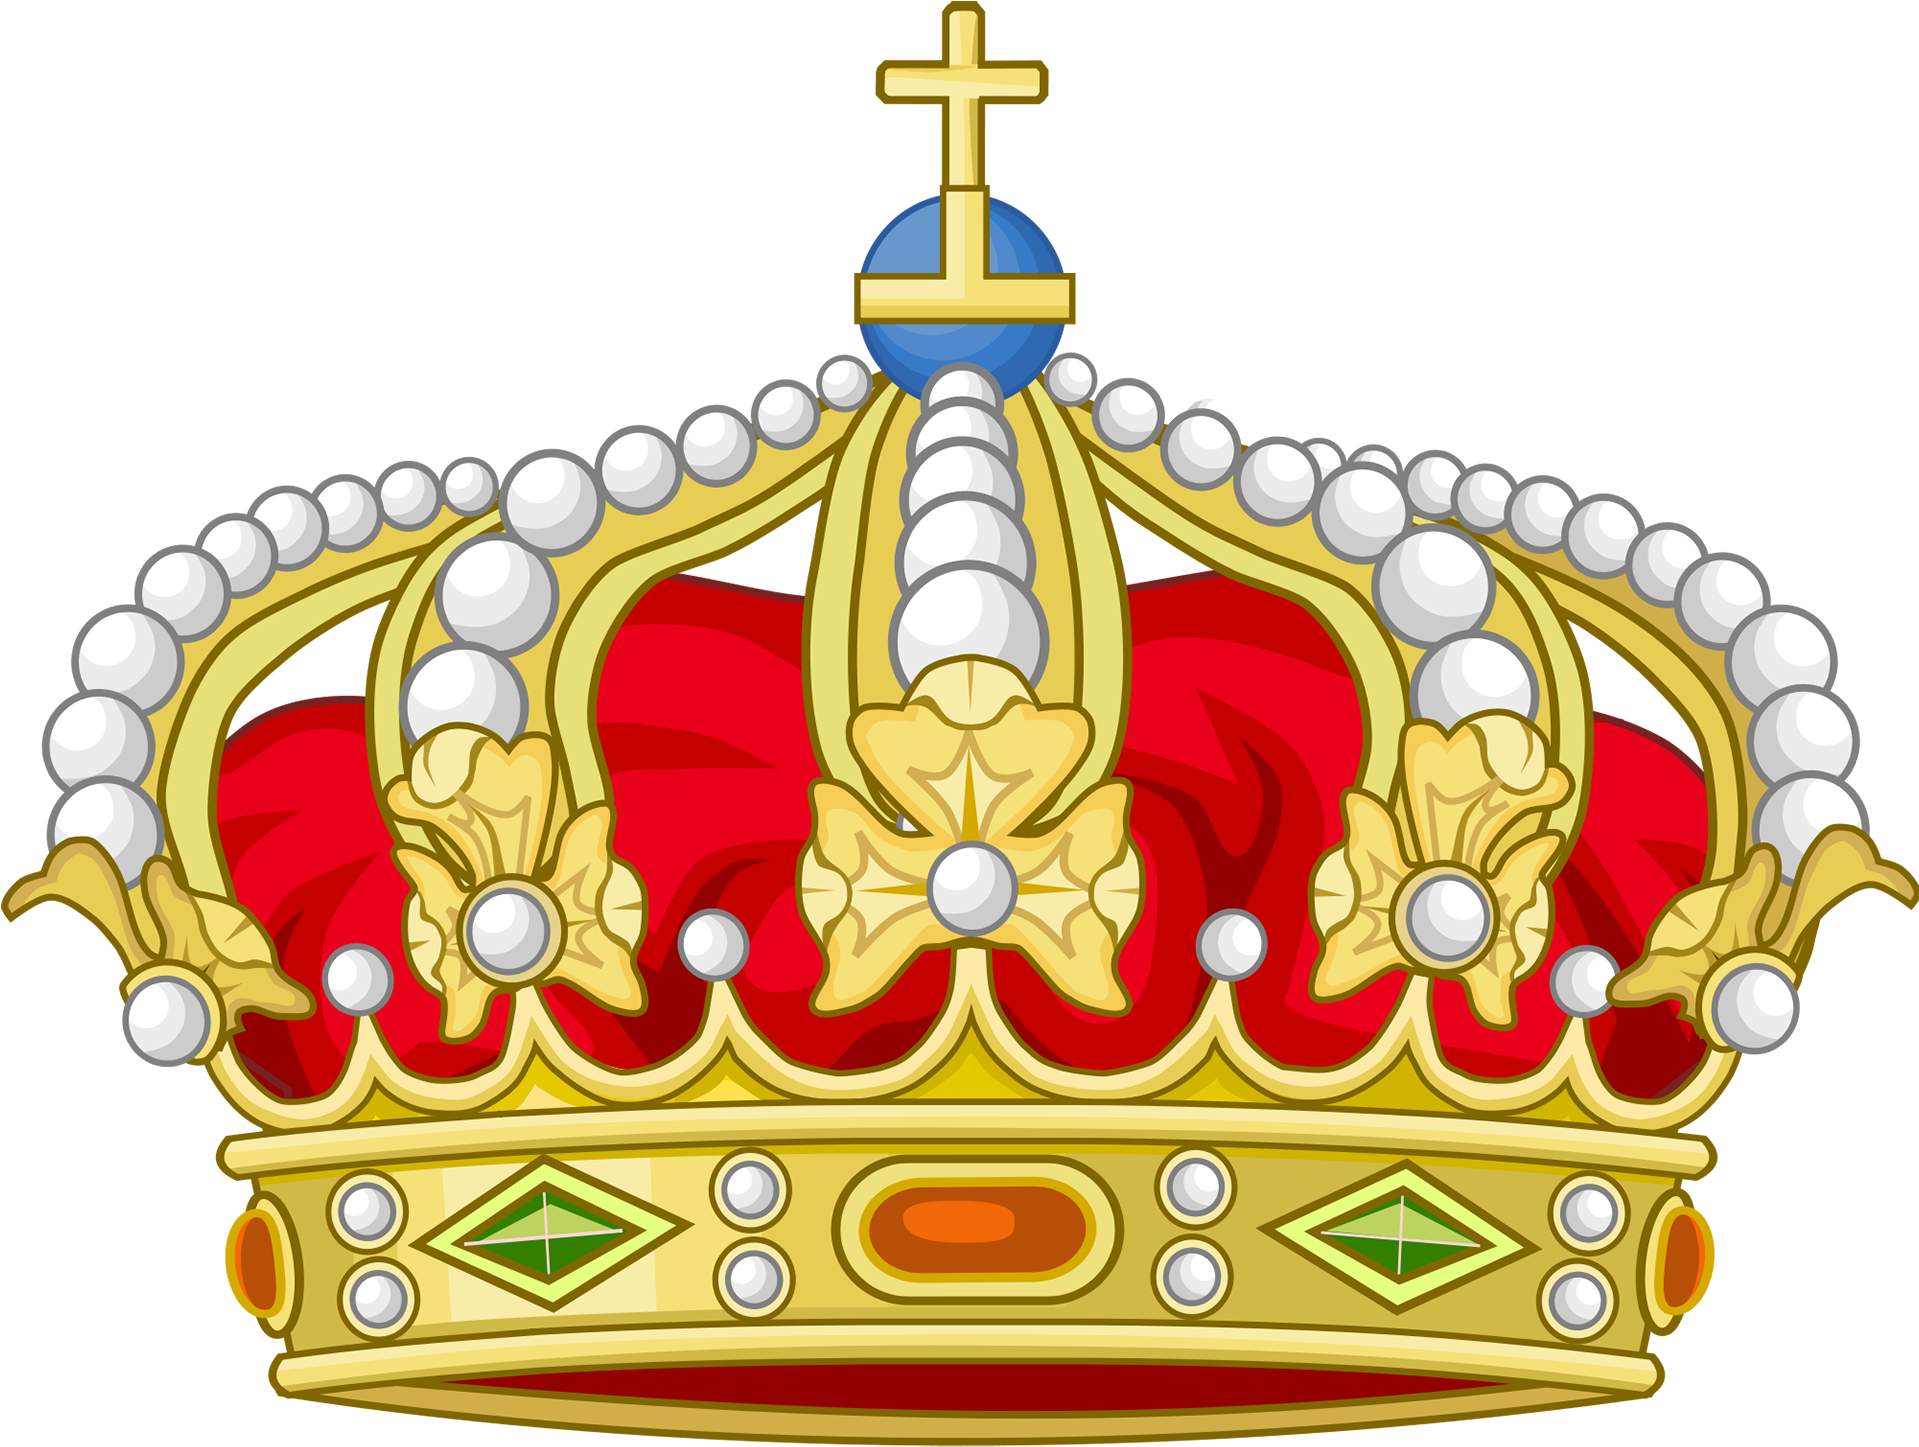 Coroas Douradas - Heraldic Royal Crown (2000x1507)